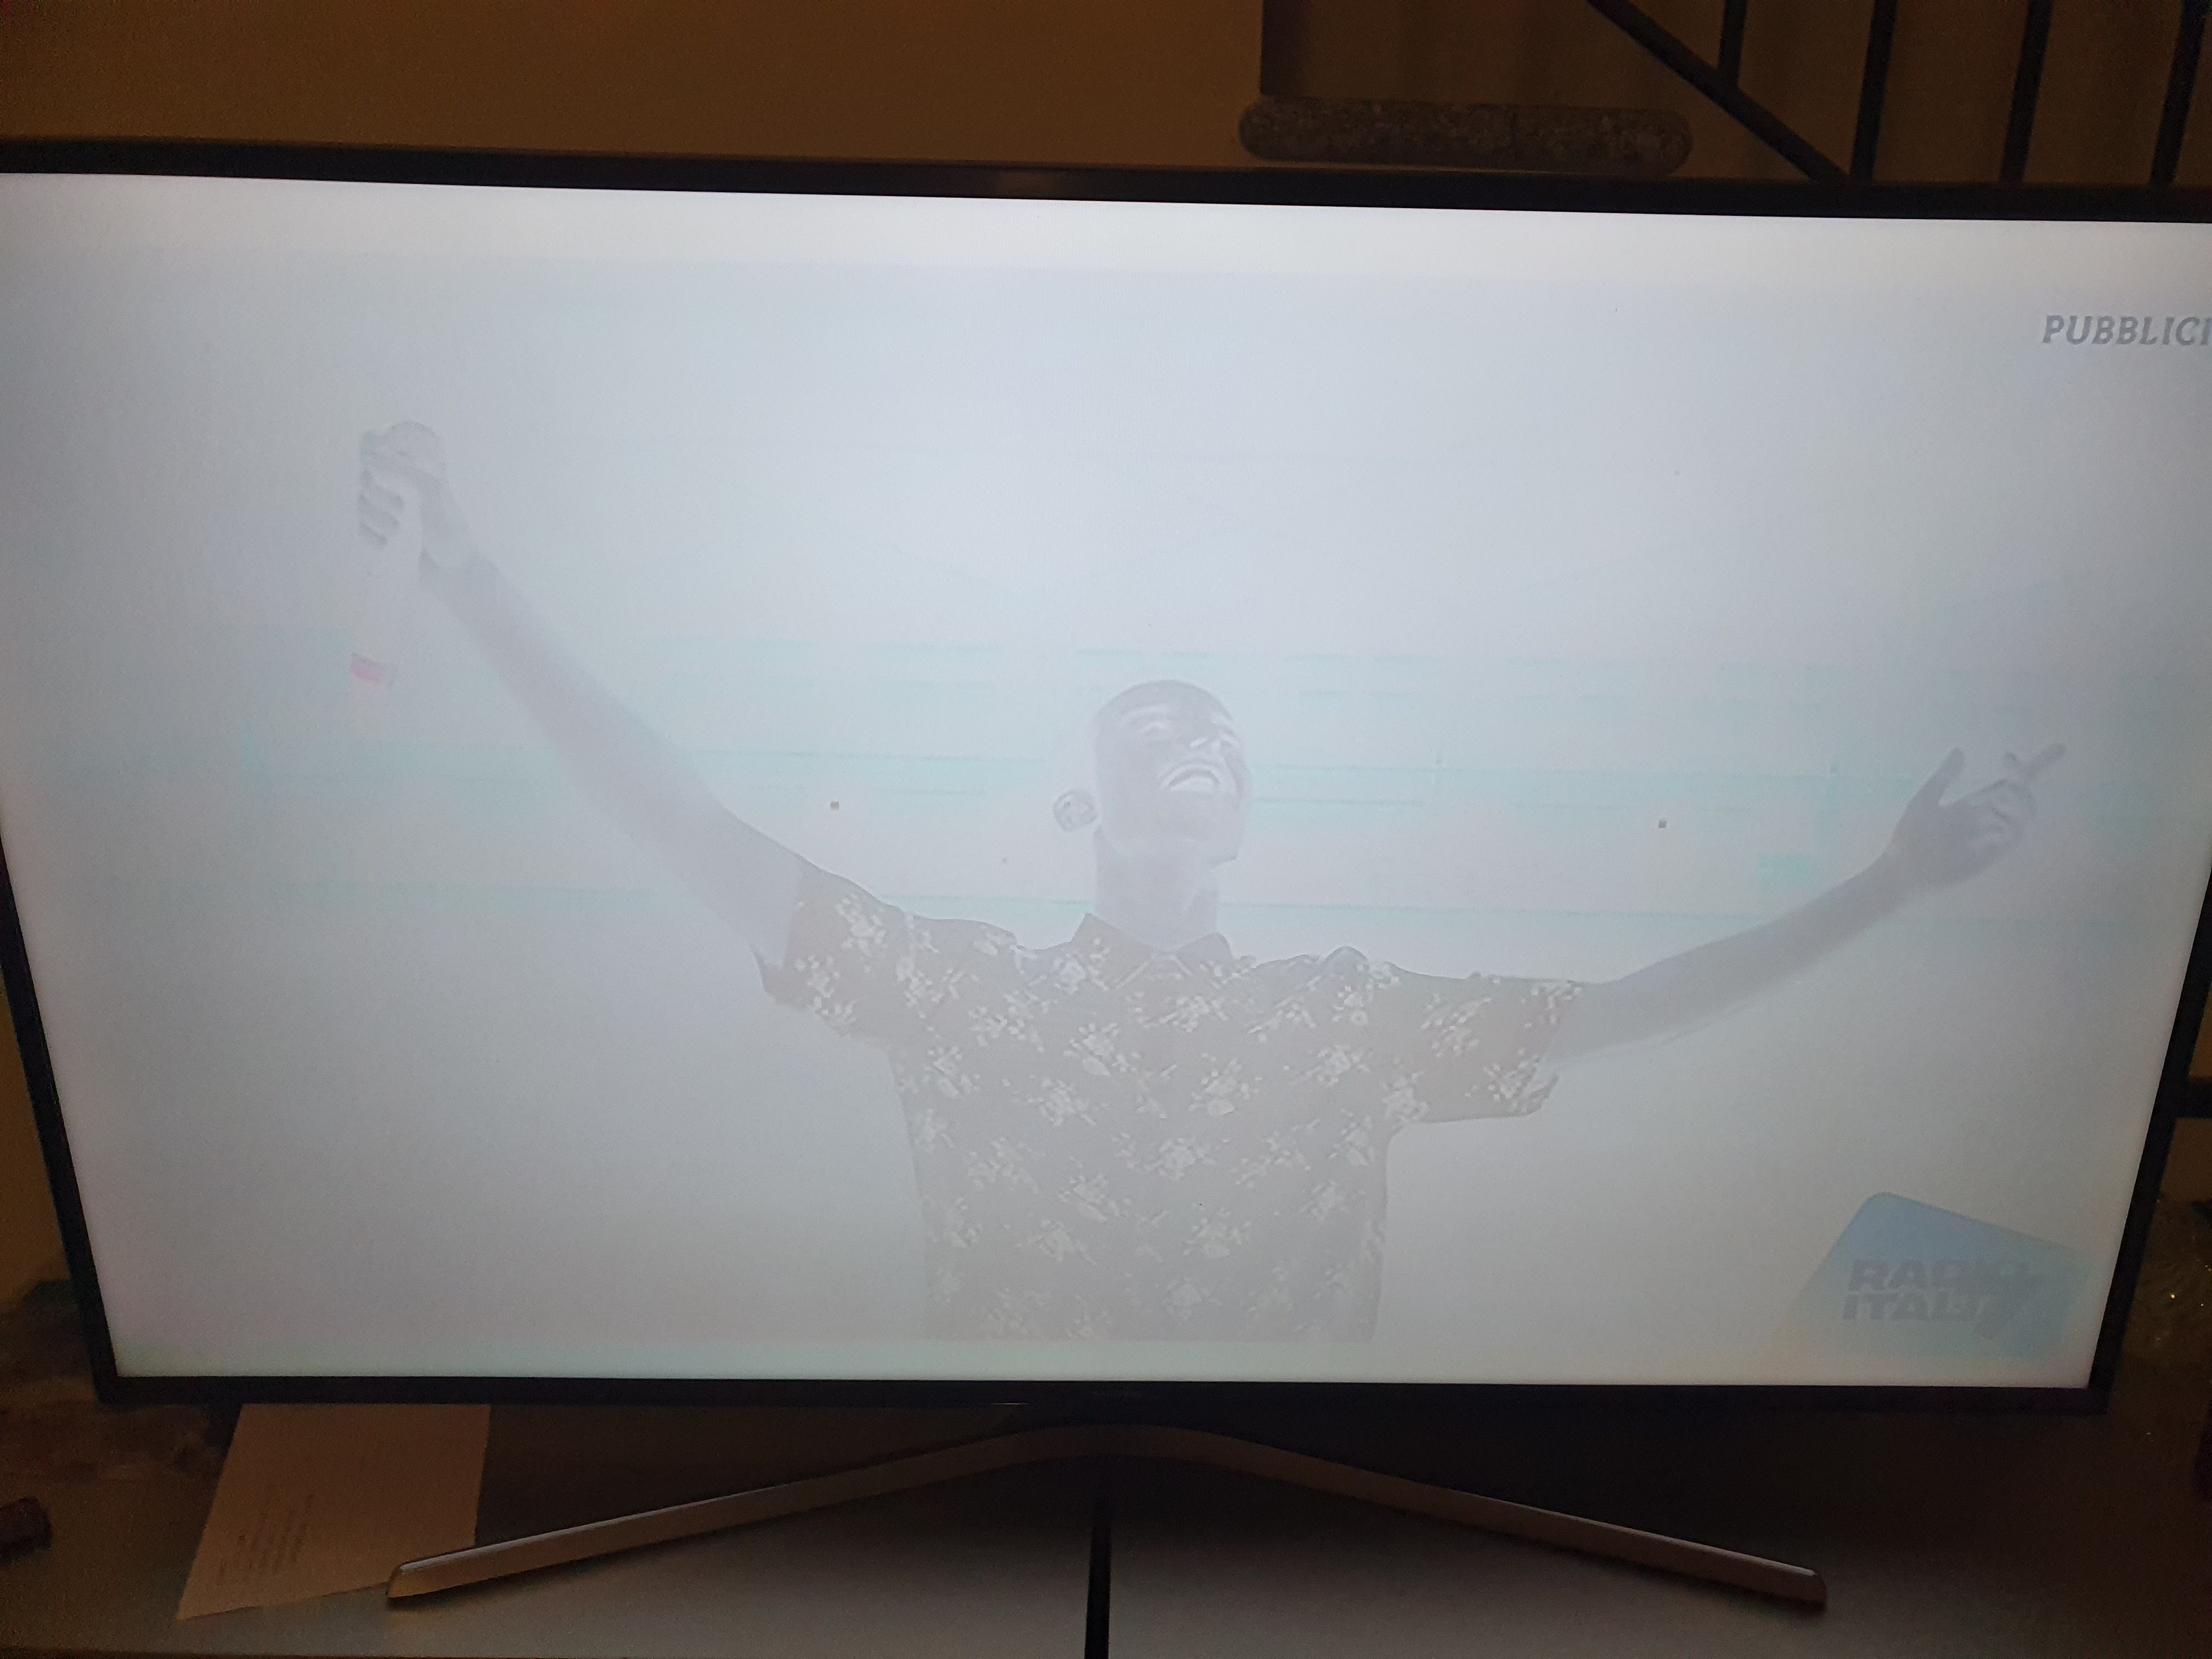 schermo bianco e l'immagine si vede in sottofondo come se fosse un negativo  - Samsung Community